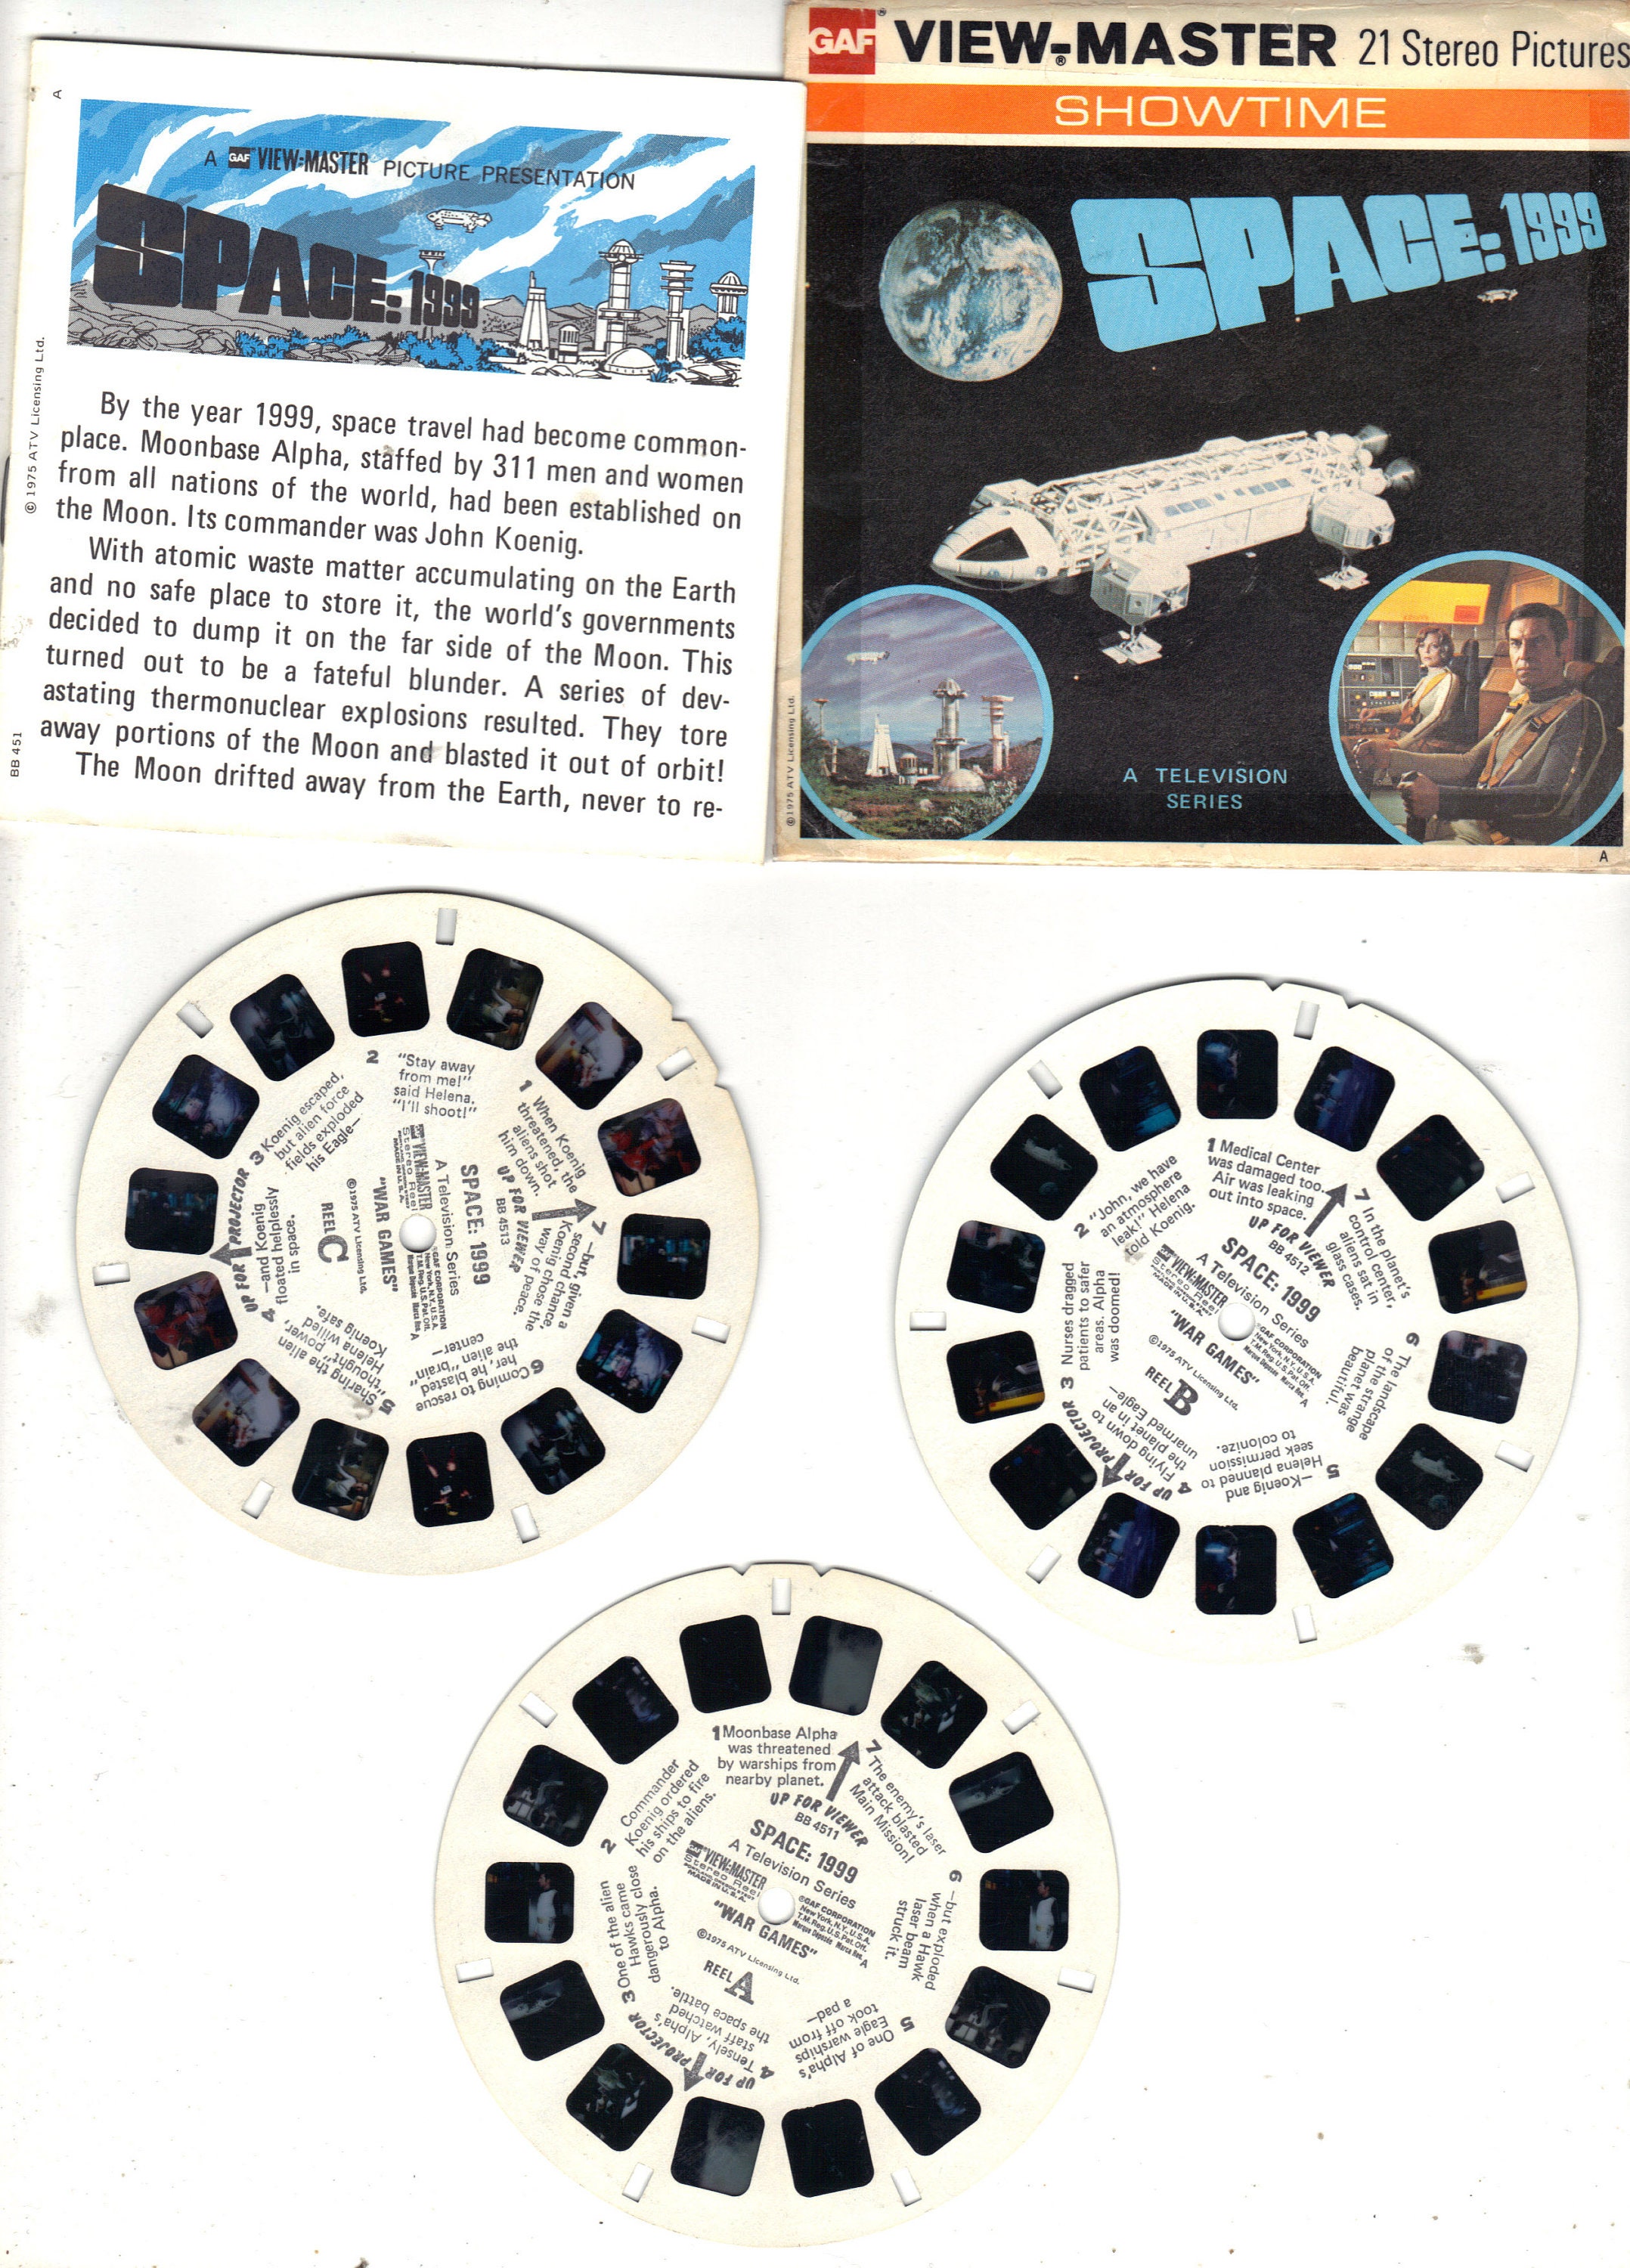 Set of 3 Vintage Viewmaster Reels - Space:1999